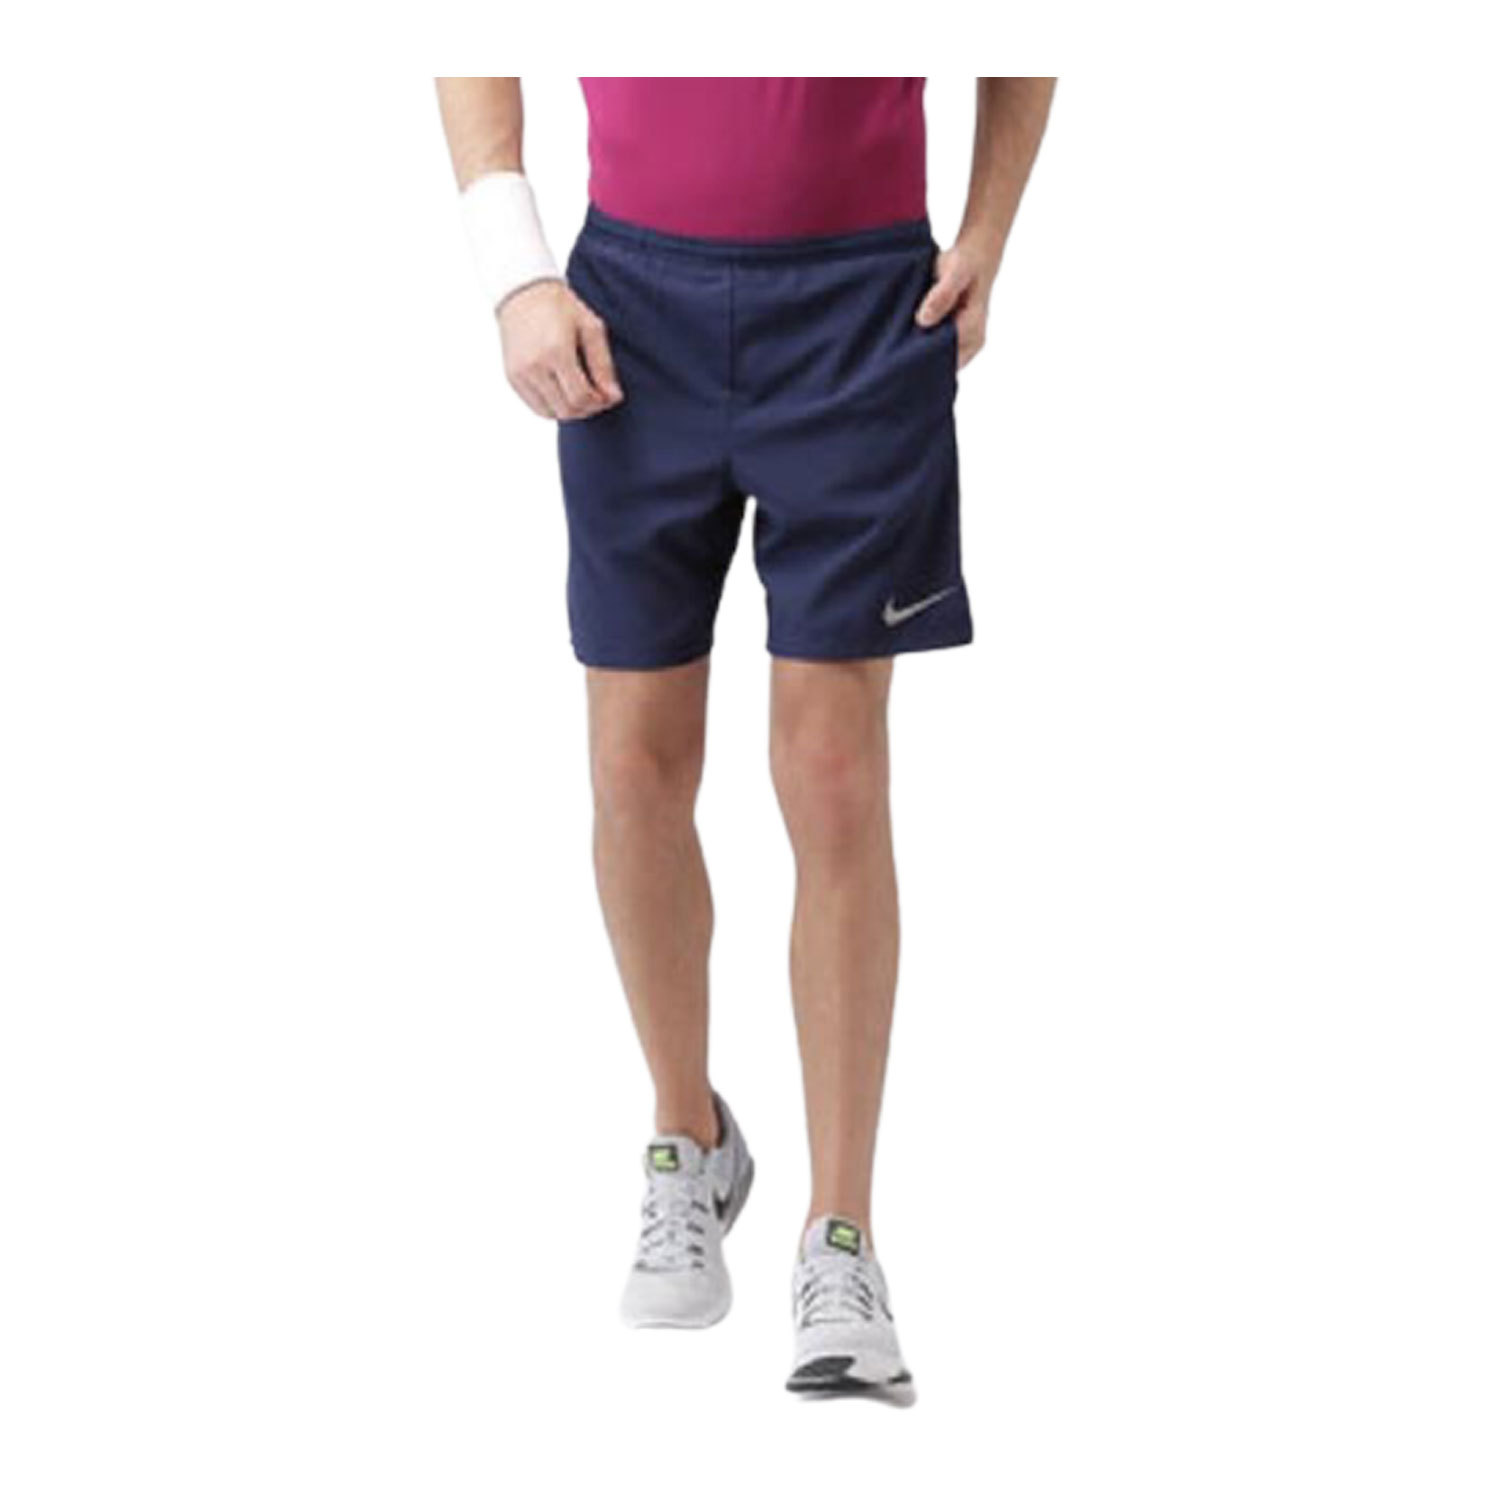 Men's Sports Shorts, M,L,XL,XXL (Pack of 12)